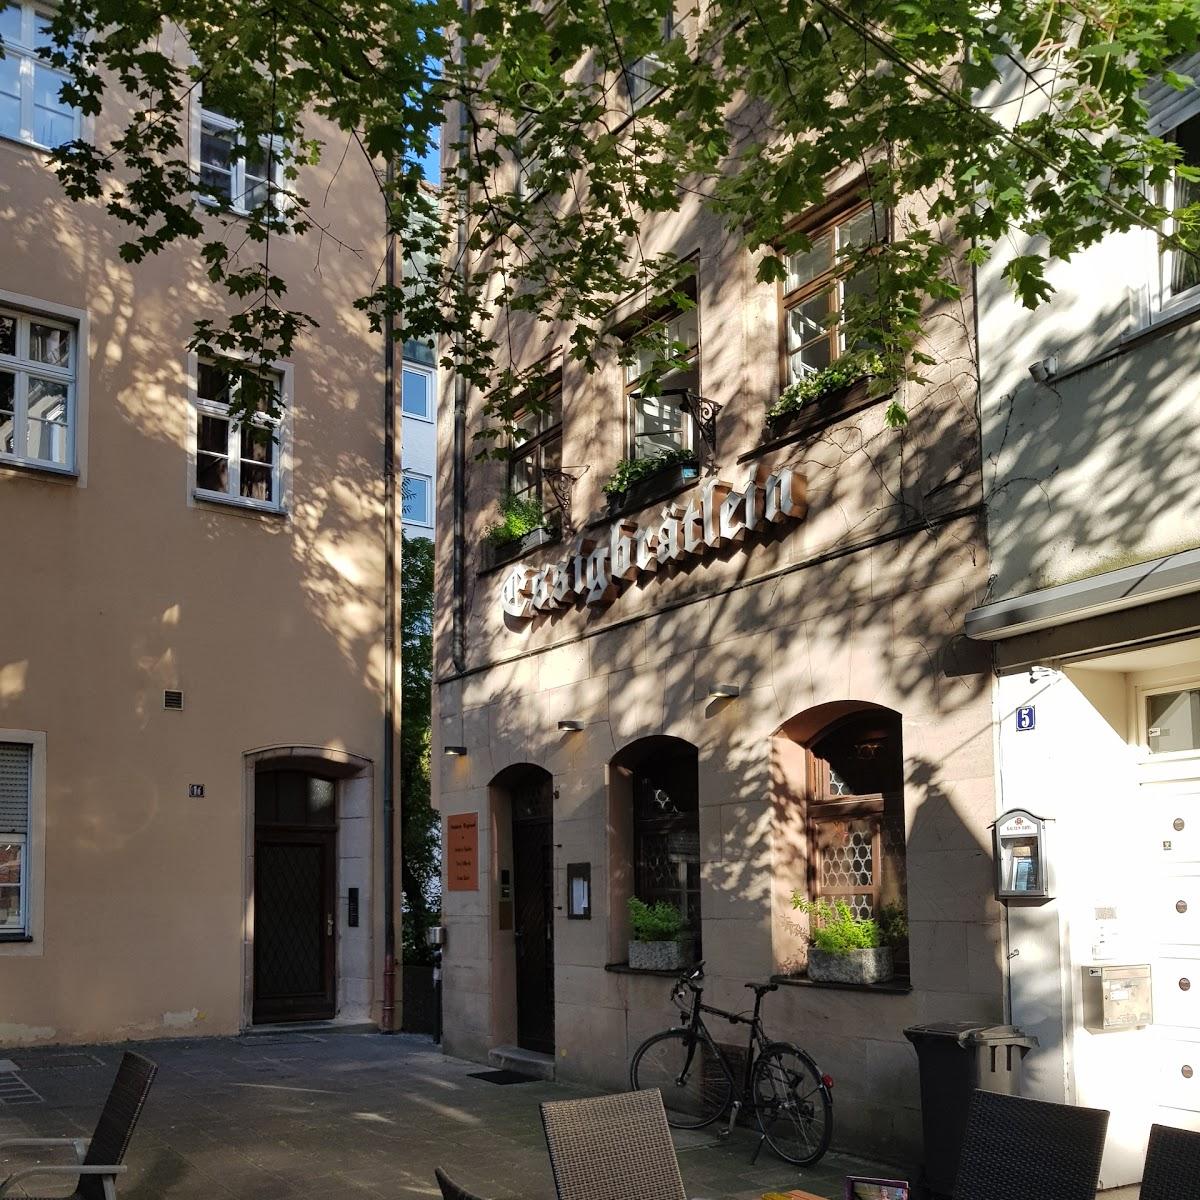 Restaurant "Essigbrätlein" in  Nürnberg